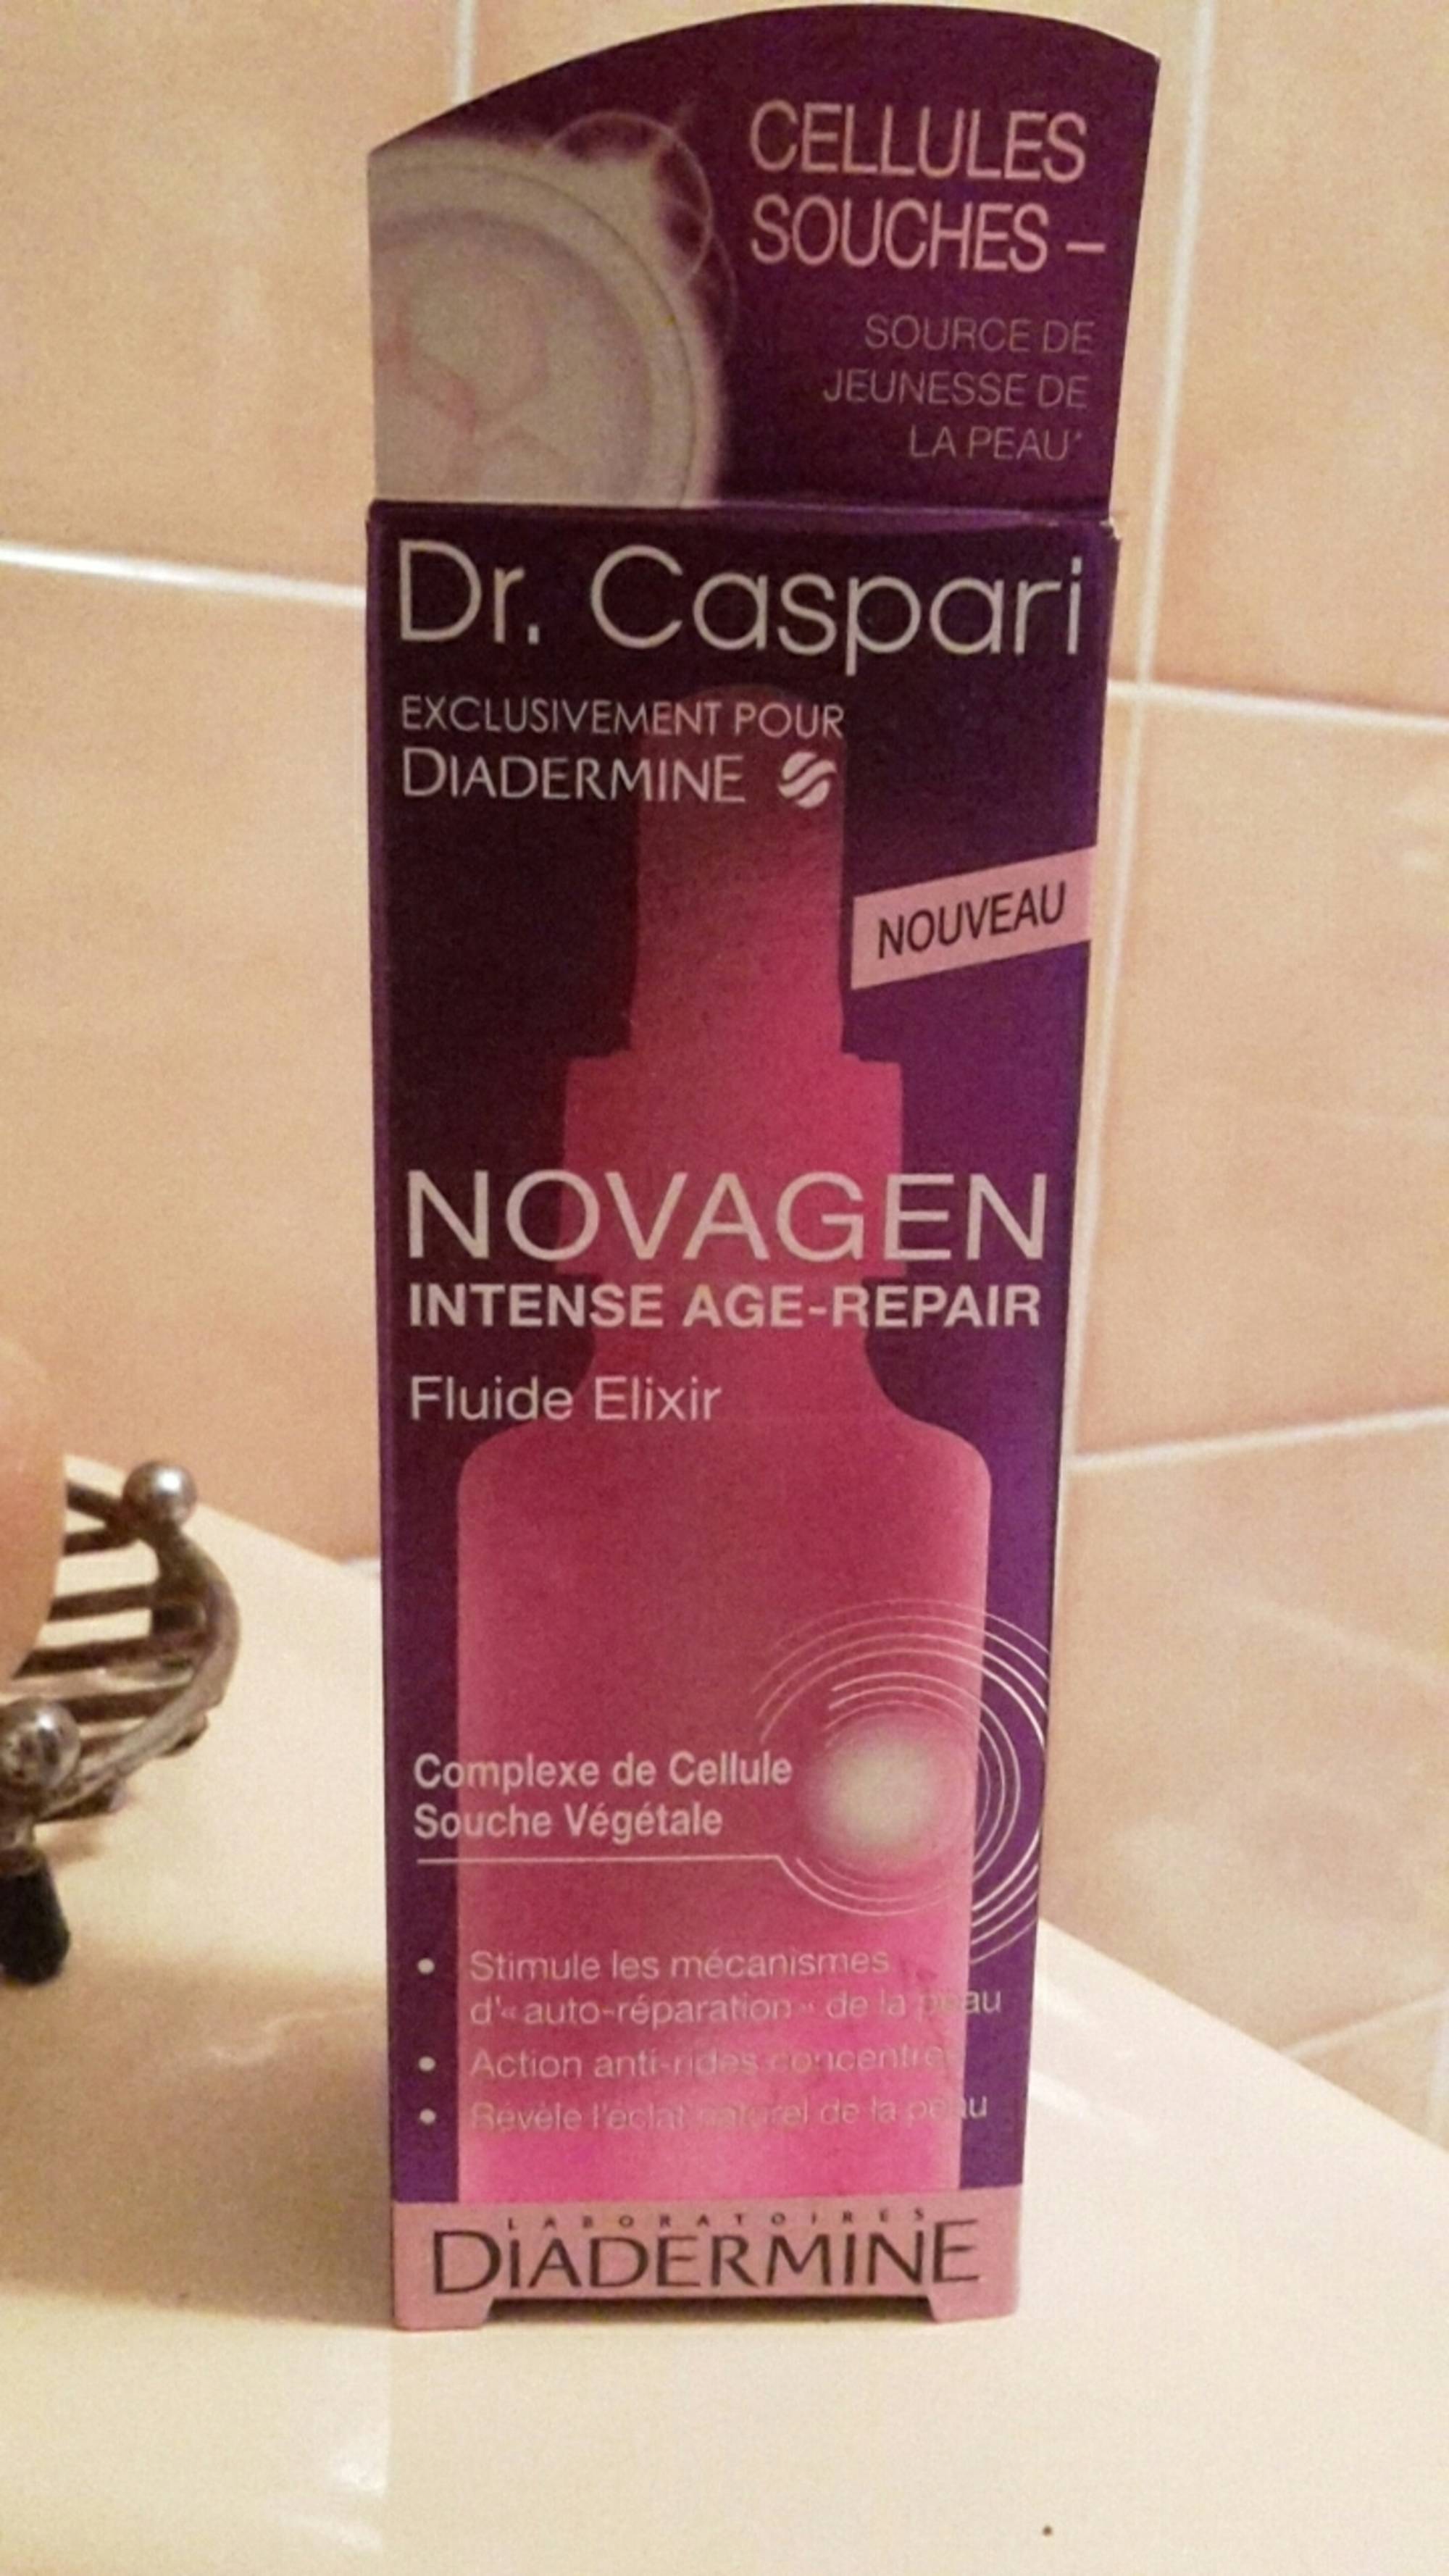 DIADERMINE - Dr. Caspari - Novagen intense age-repair